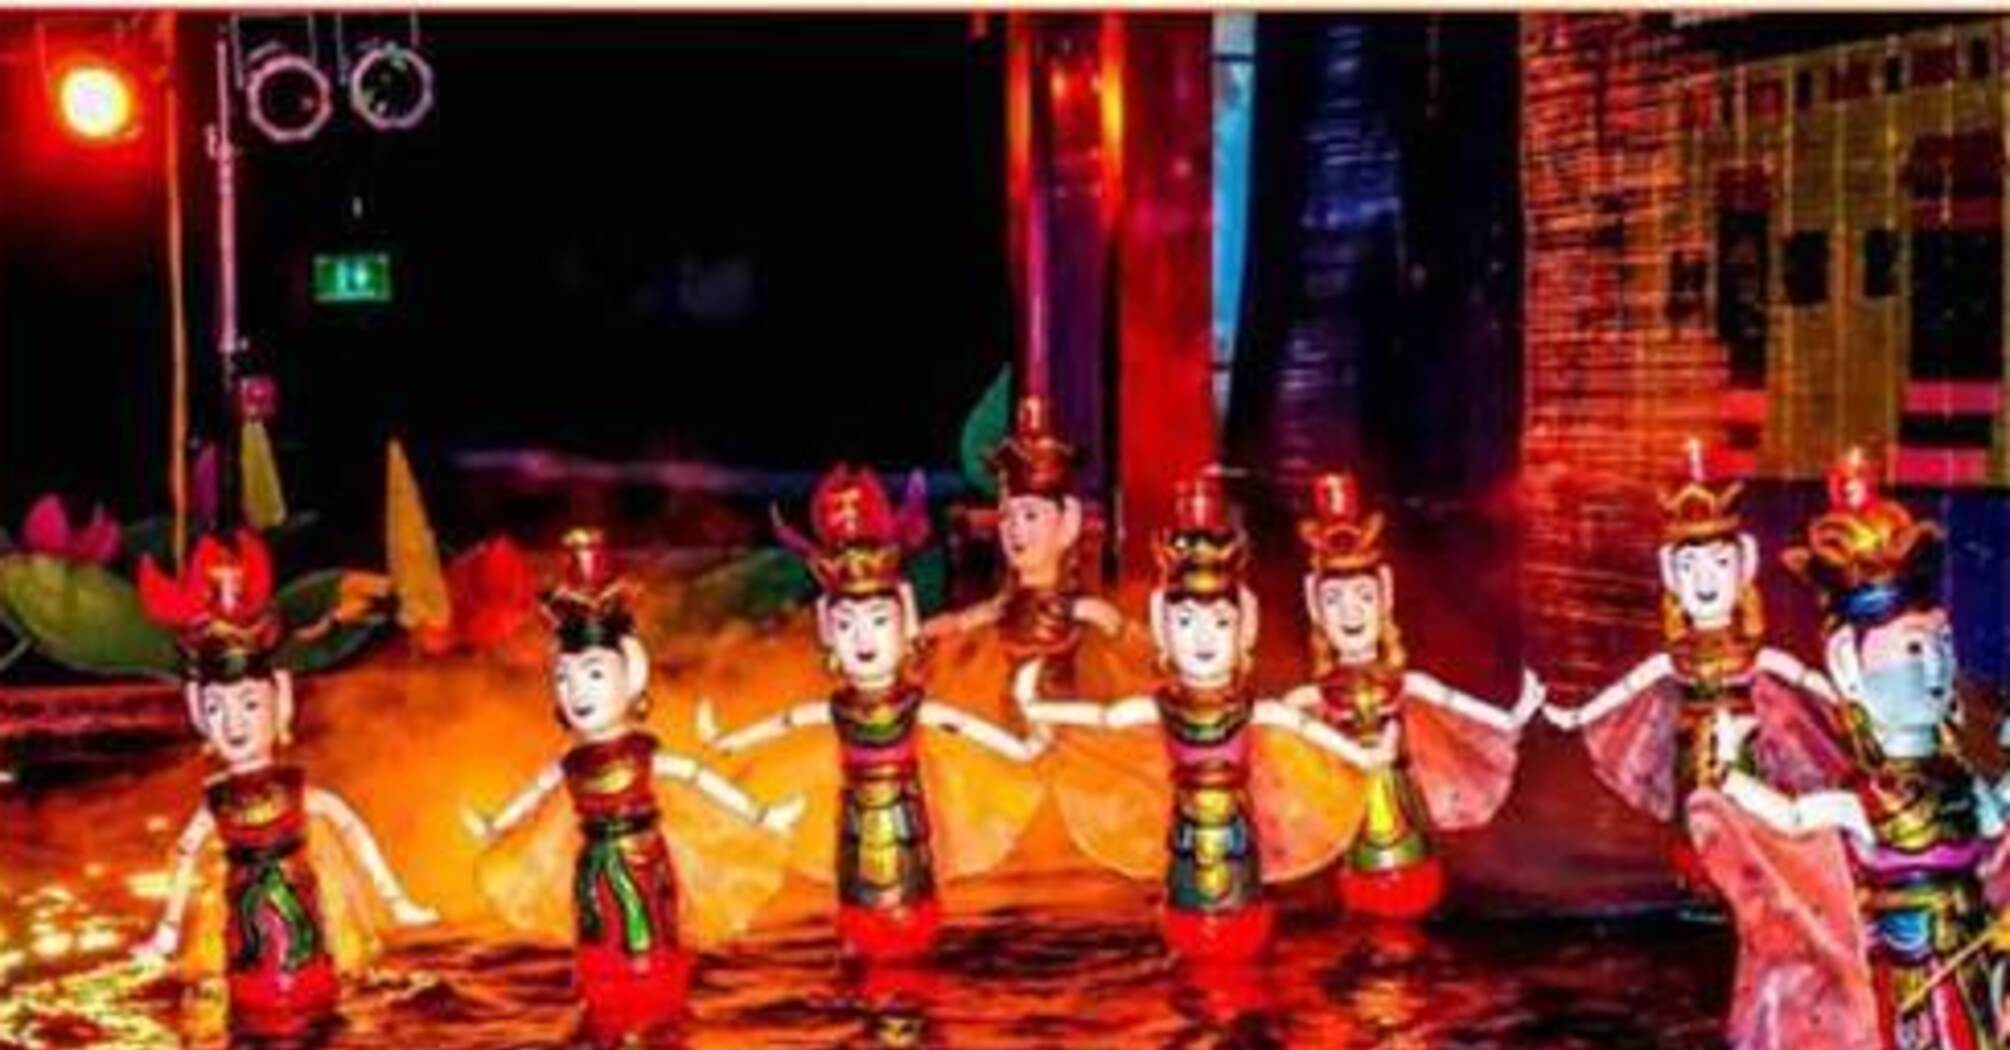 Вьетнамский кукольный театр: погрузитесь в уникальное культурное явление в Ханое